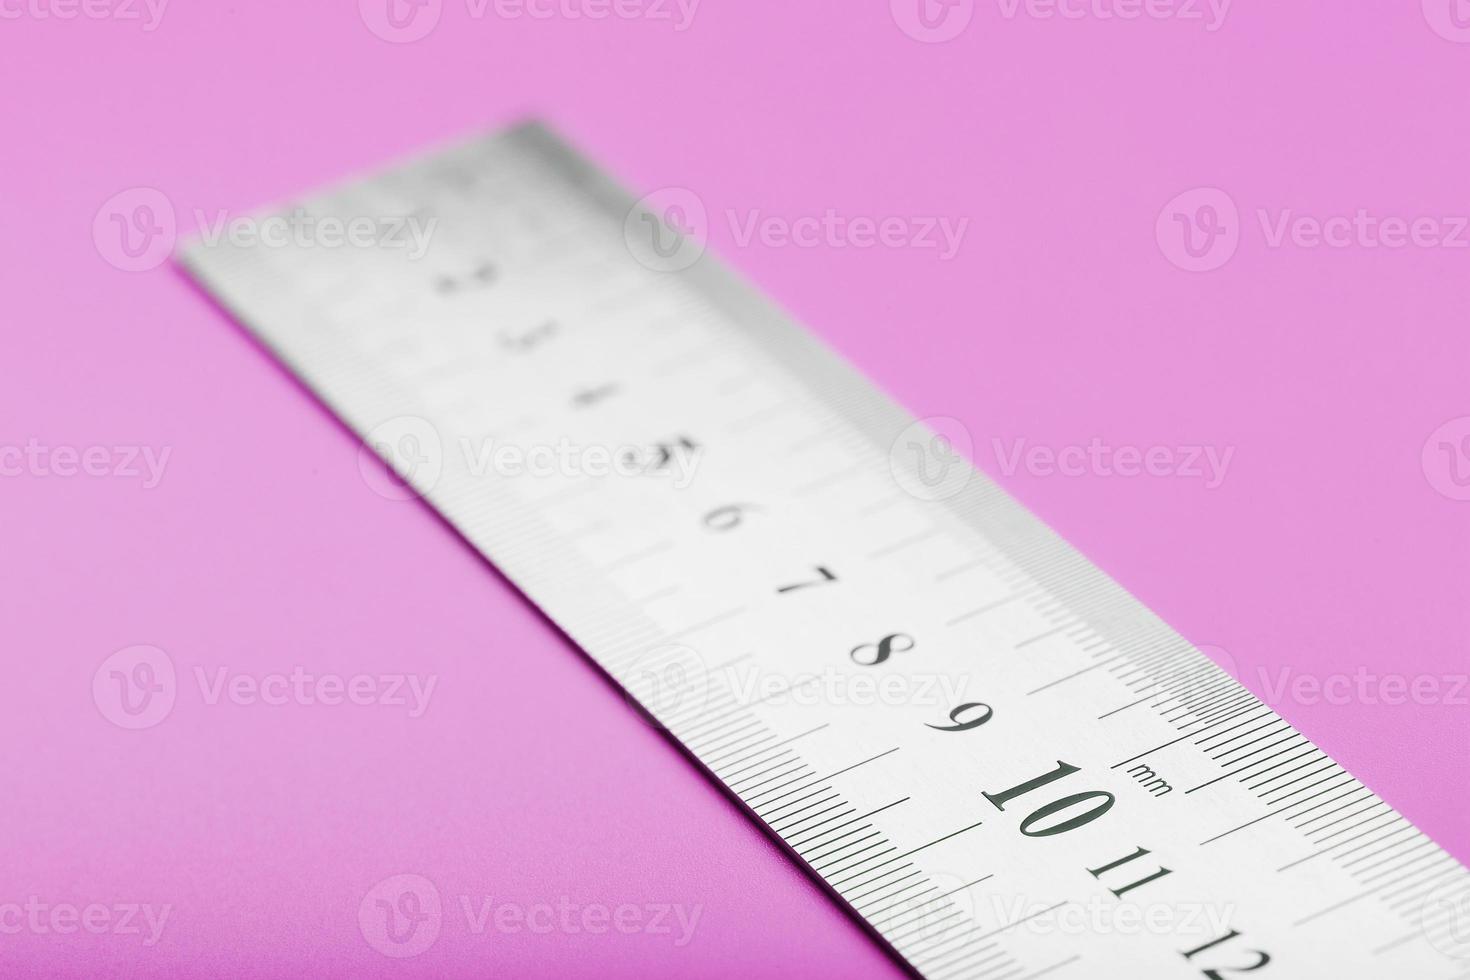 regla de metal en un primer plano de fondo rosa con una copia del lugar para el texto. foto